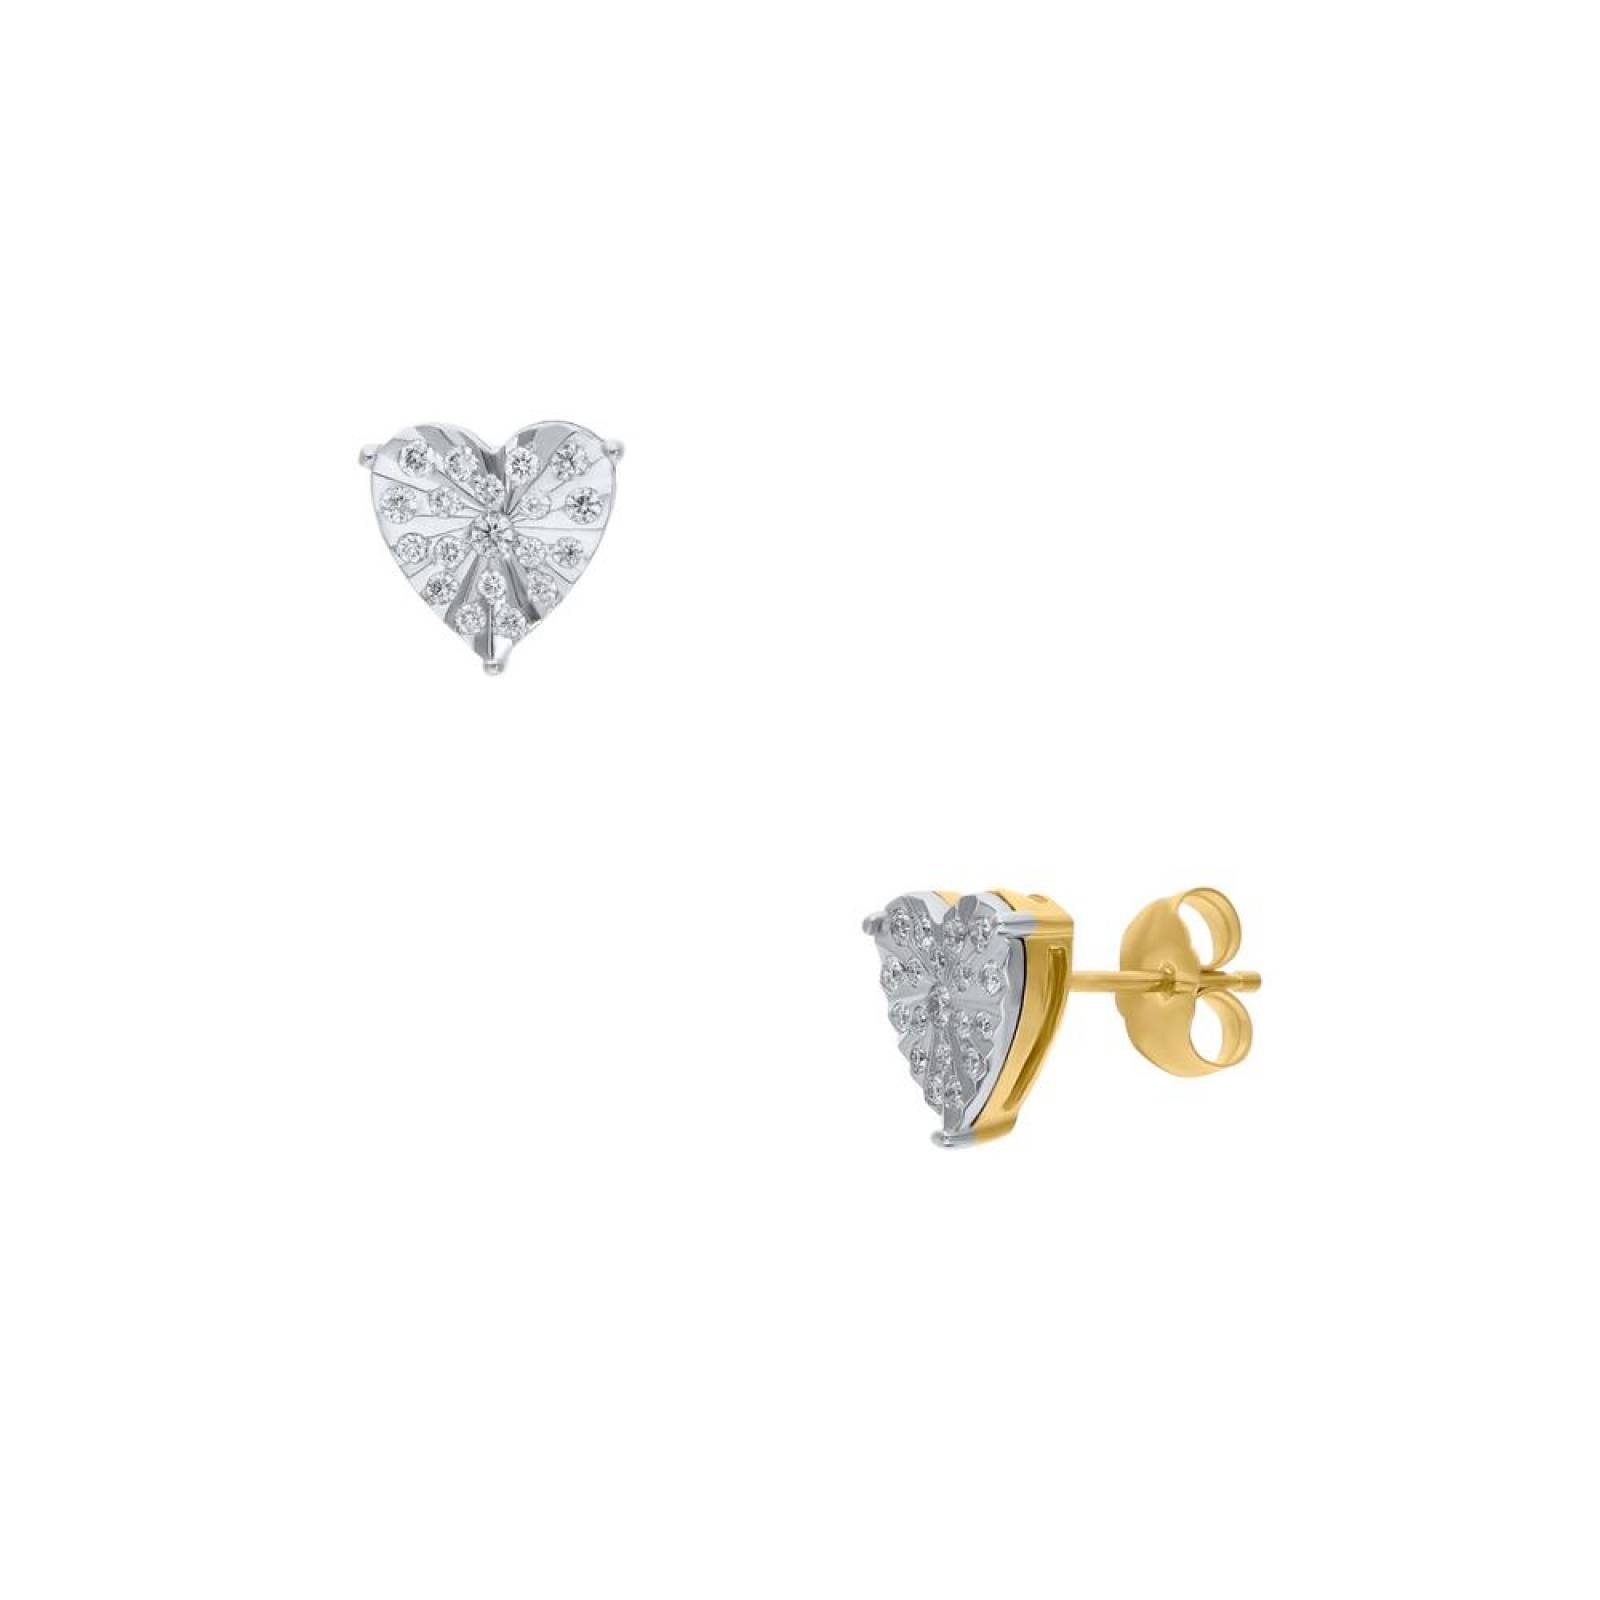 Broqueles de Oro Amarillo y Blanco 14K con 21Pts de Diamante (GH) (Vs1Vs2) 